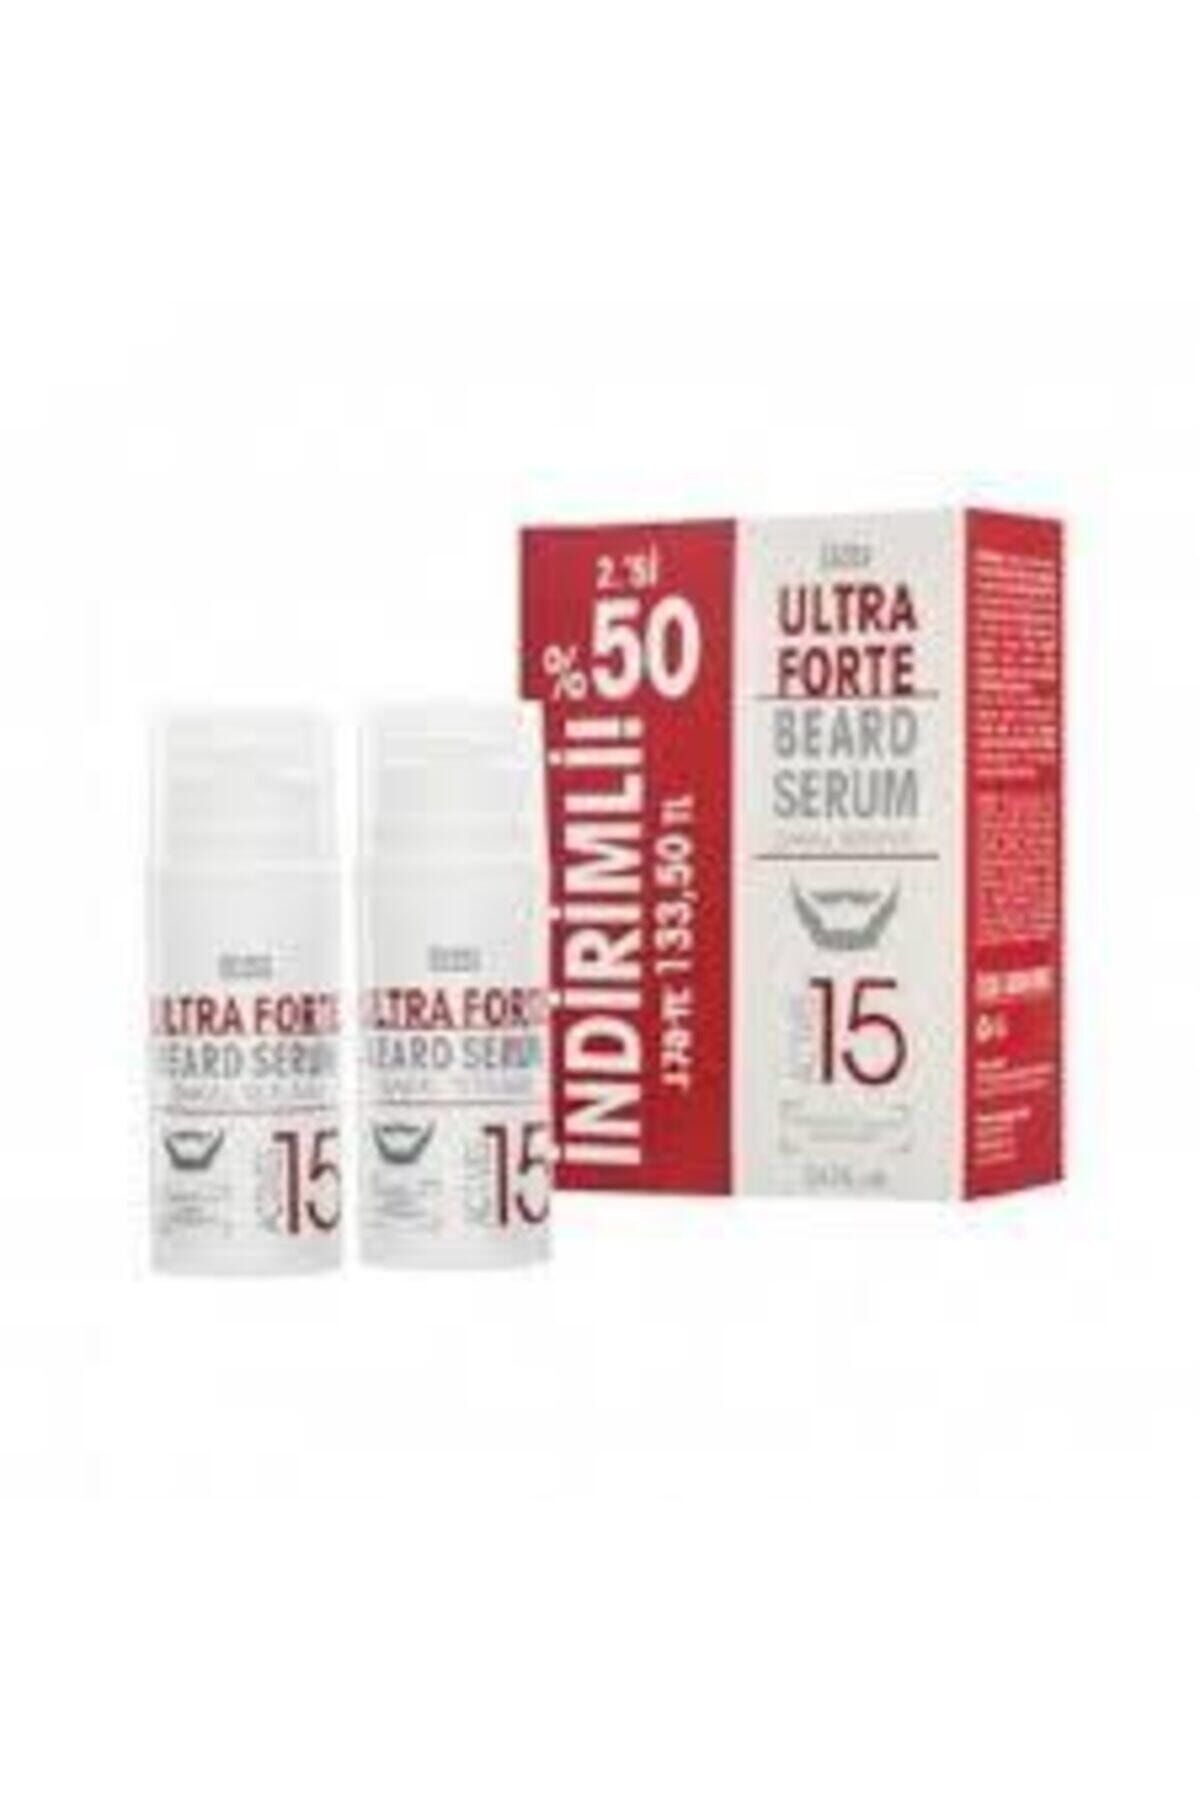 Eeose Ultra Forte Sakal Serumu 75 ml Ikili Kofre Paket